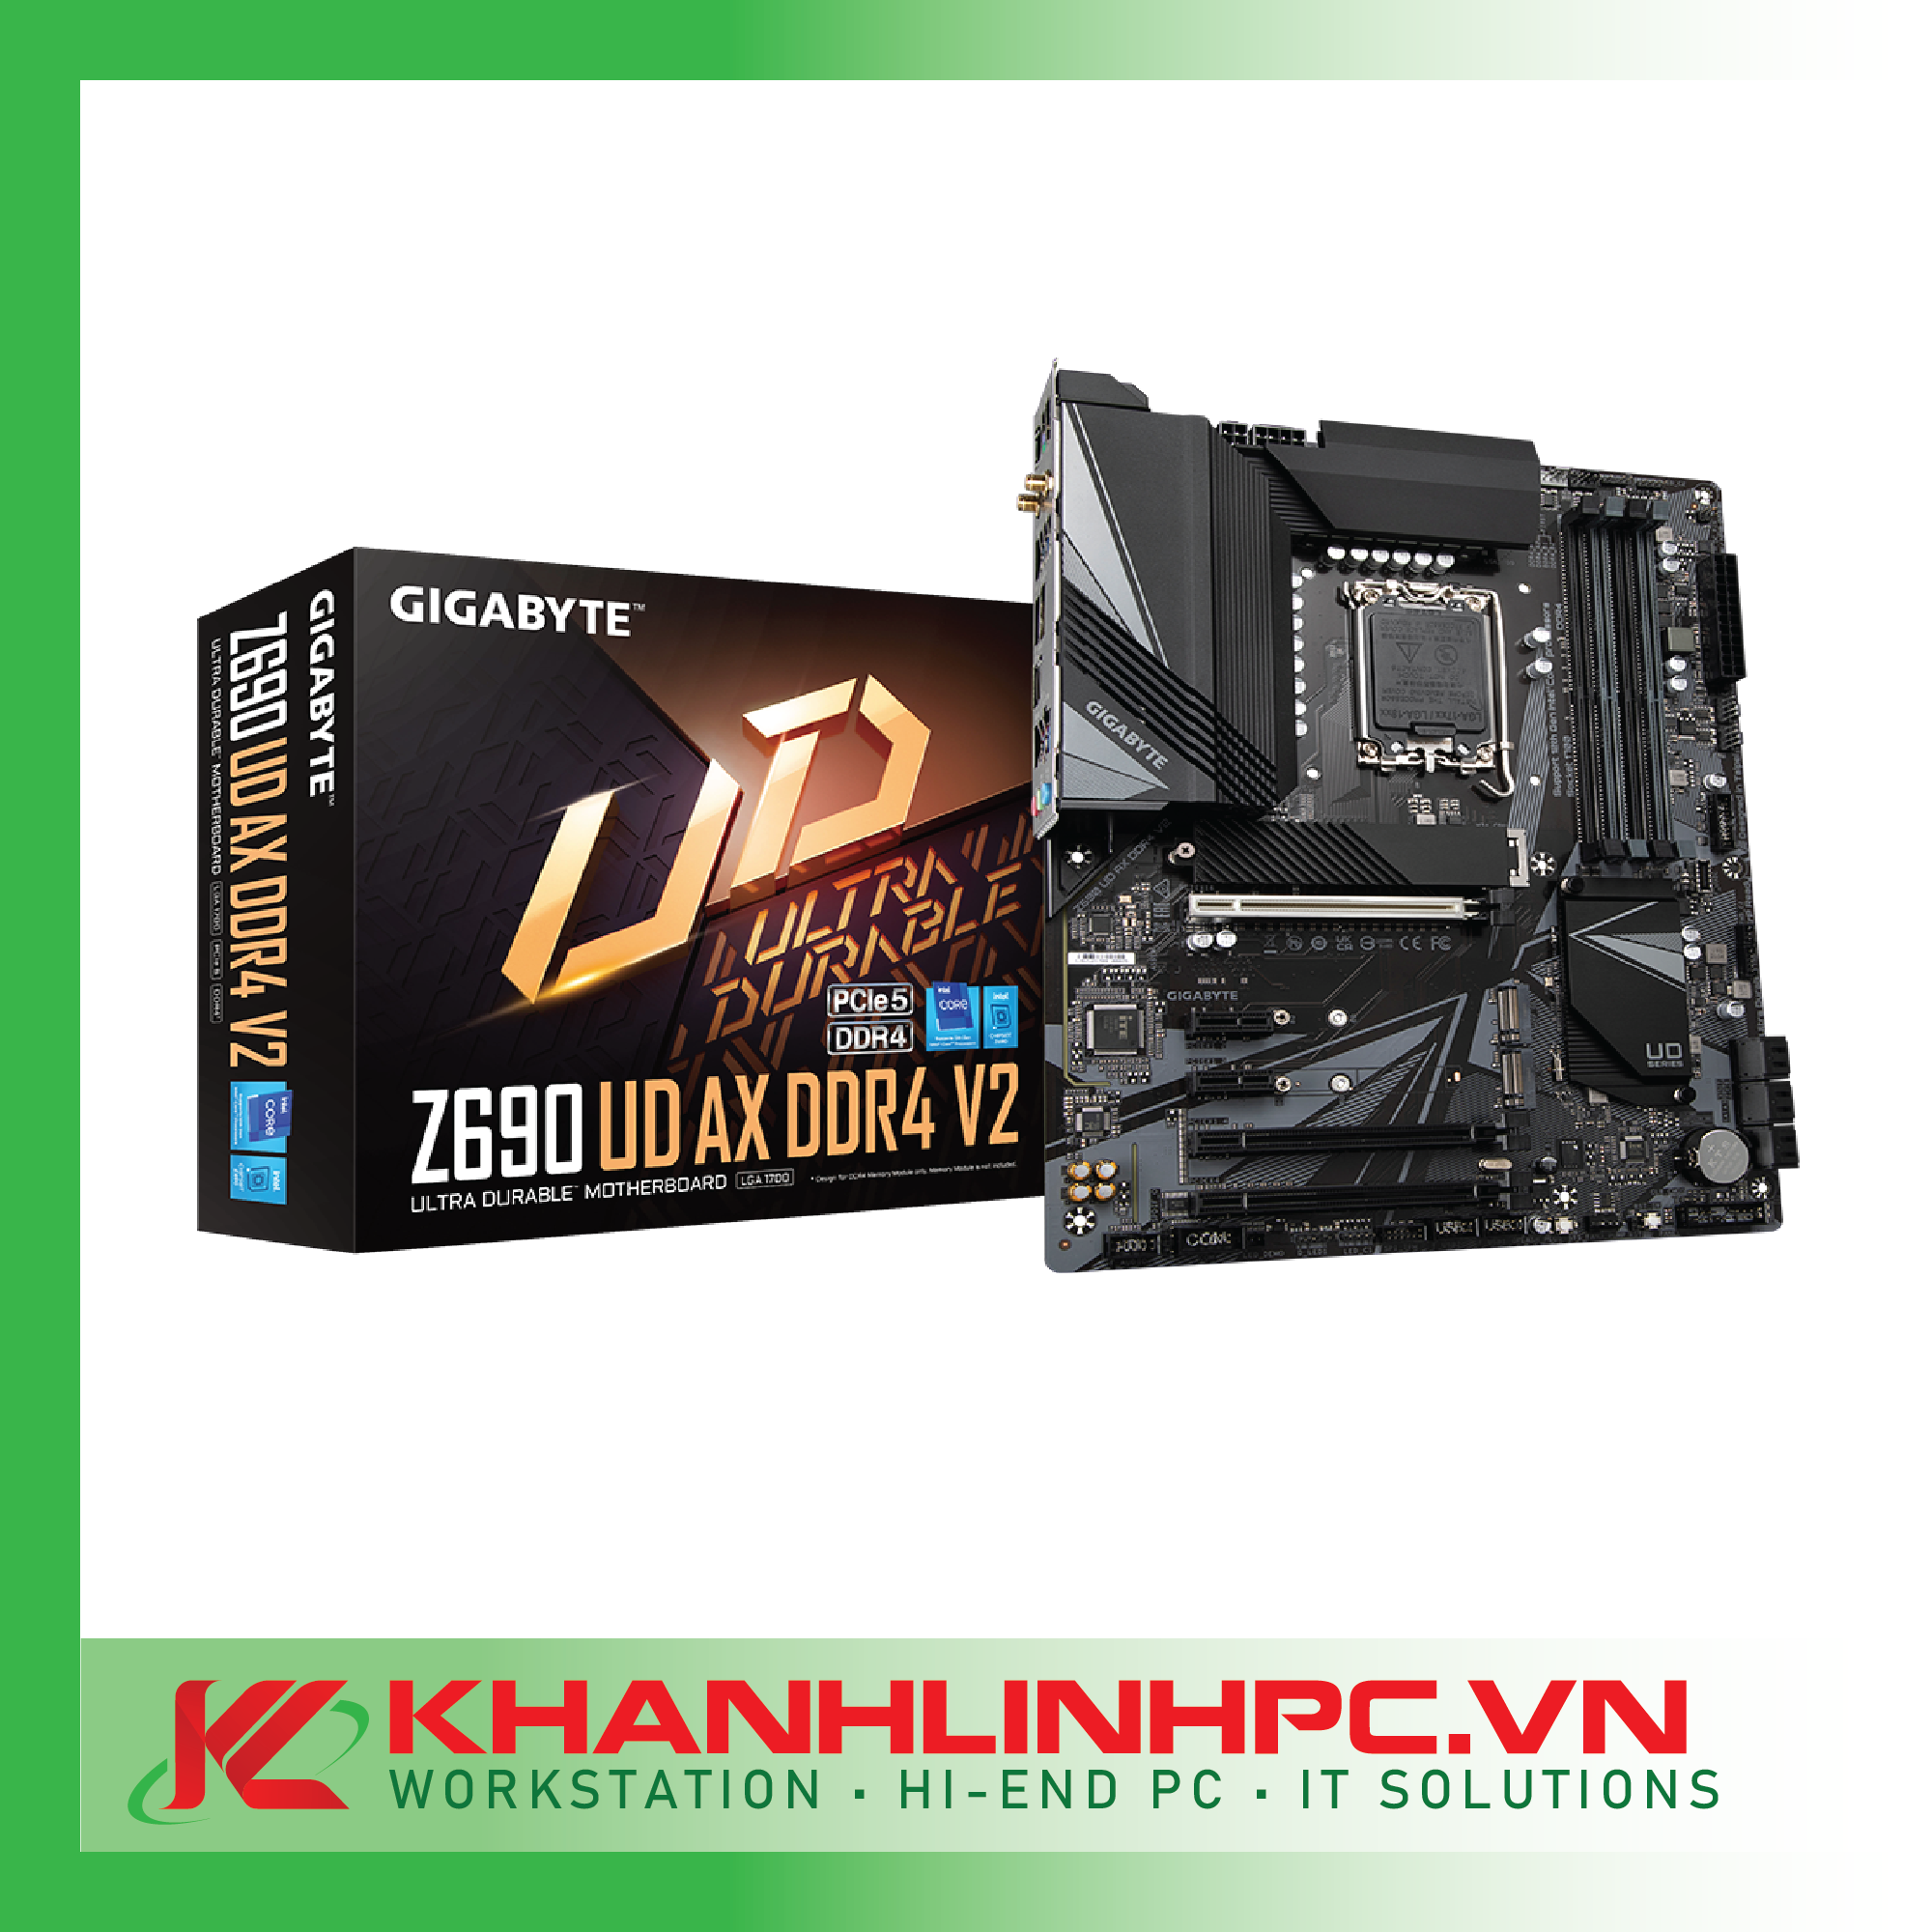 GIGABYTE Z690 UD AX DDR4 V2